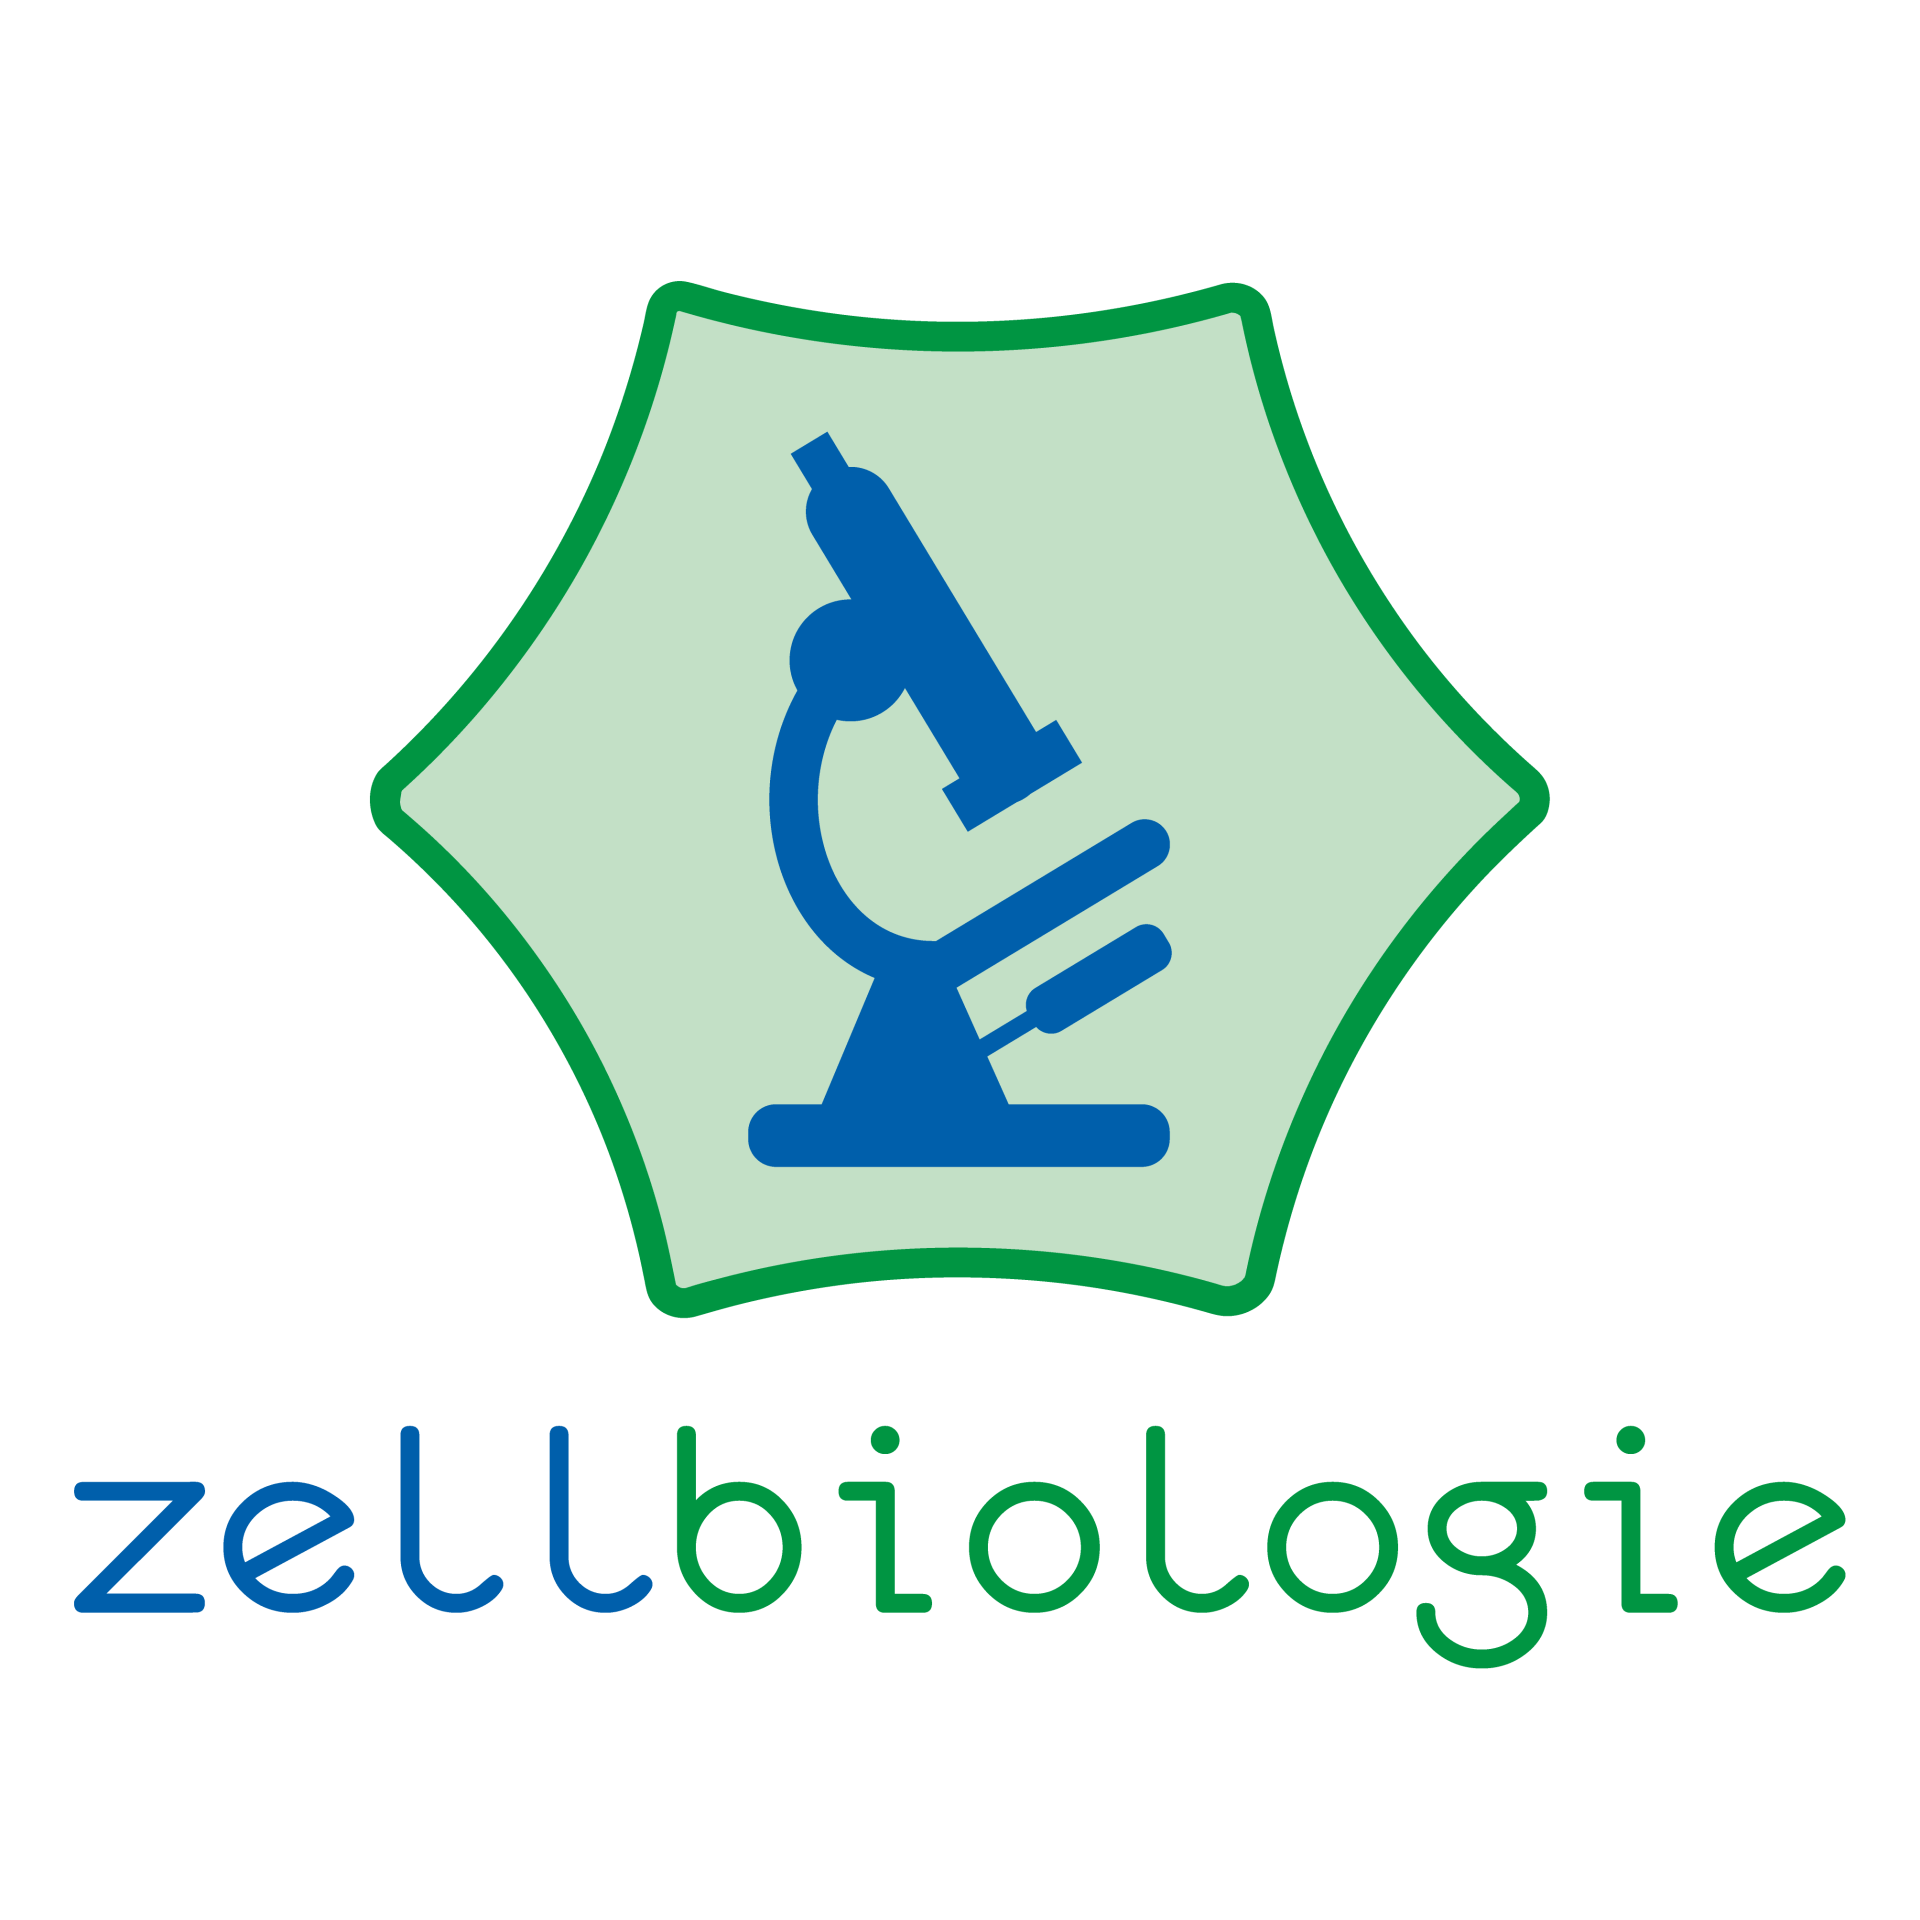 blaubiologie - zellbiologie